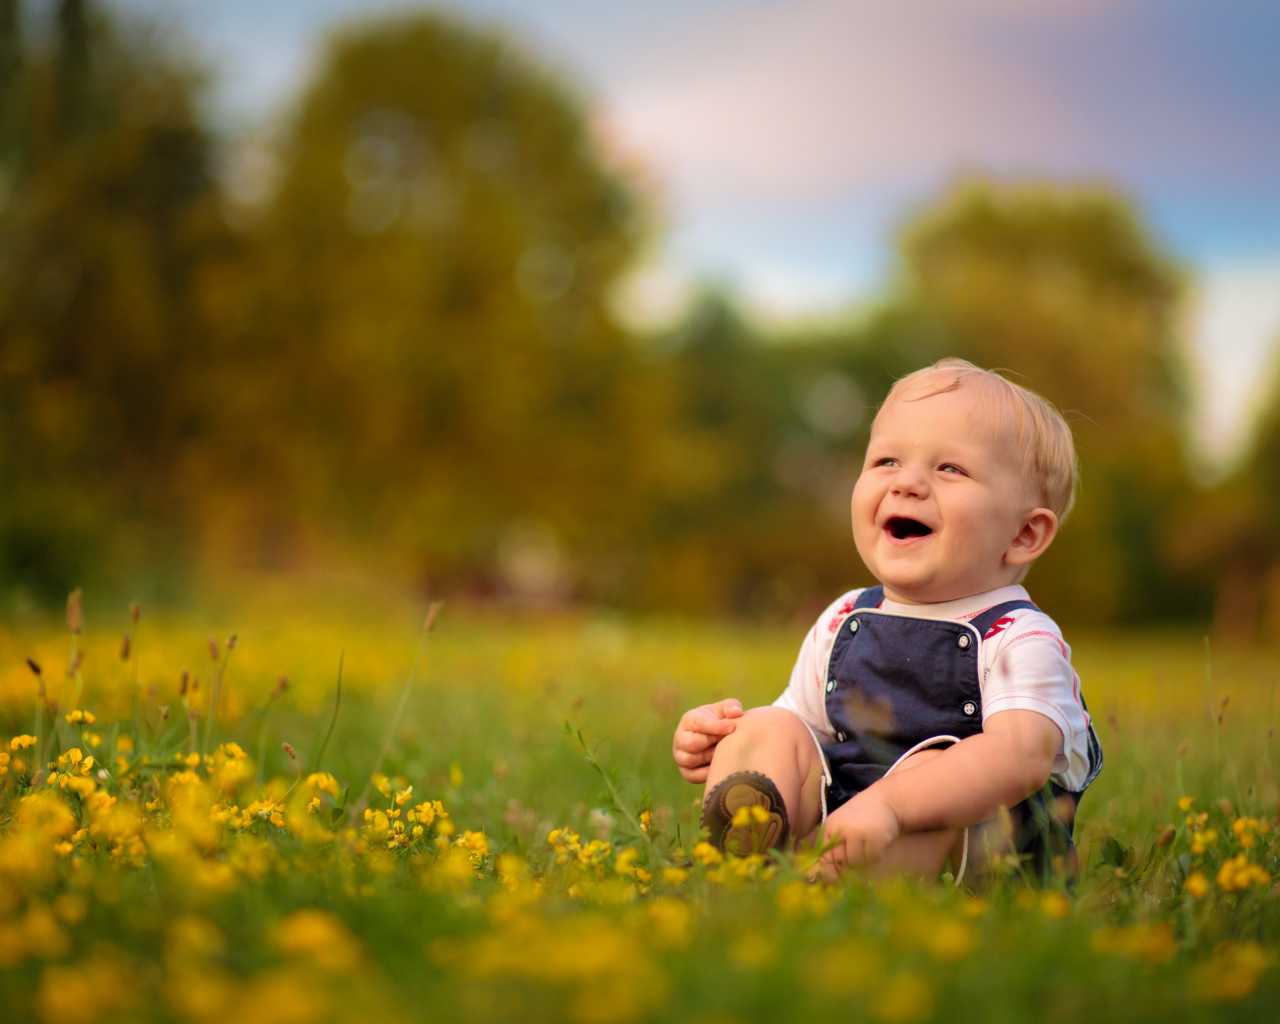 трава, мальчик, ребёнок, радость